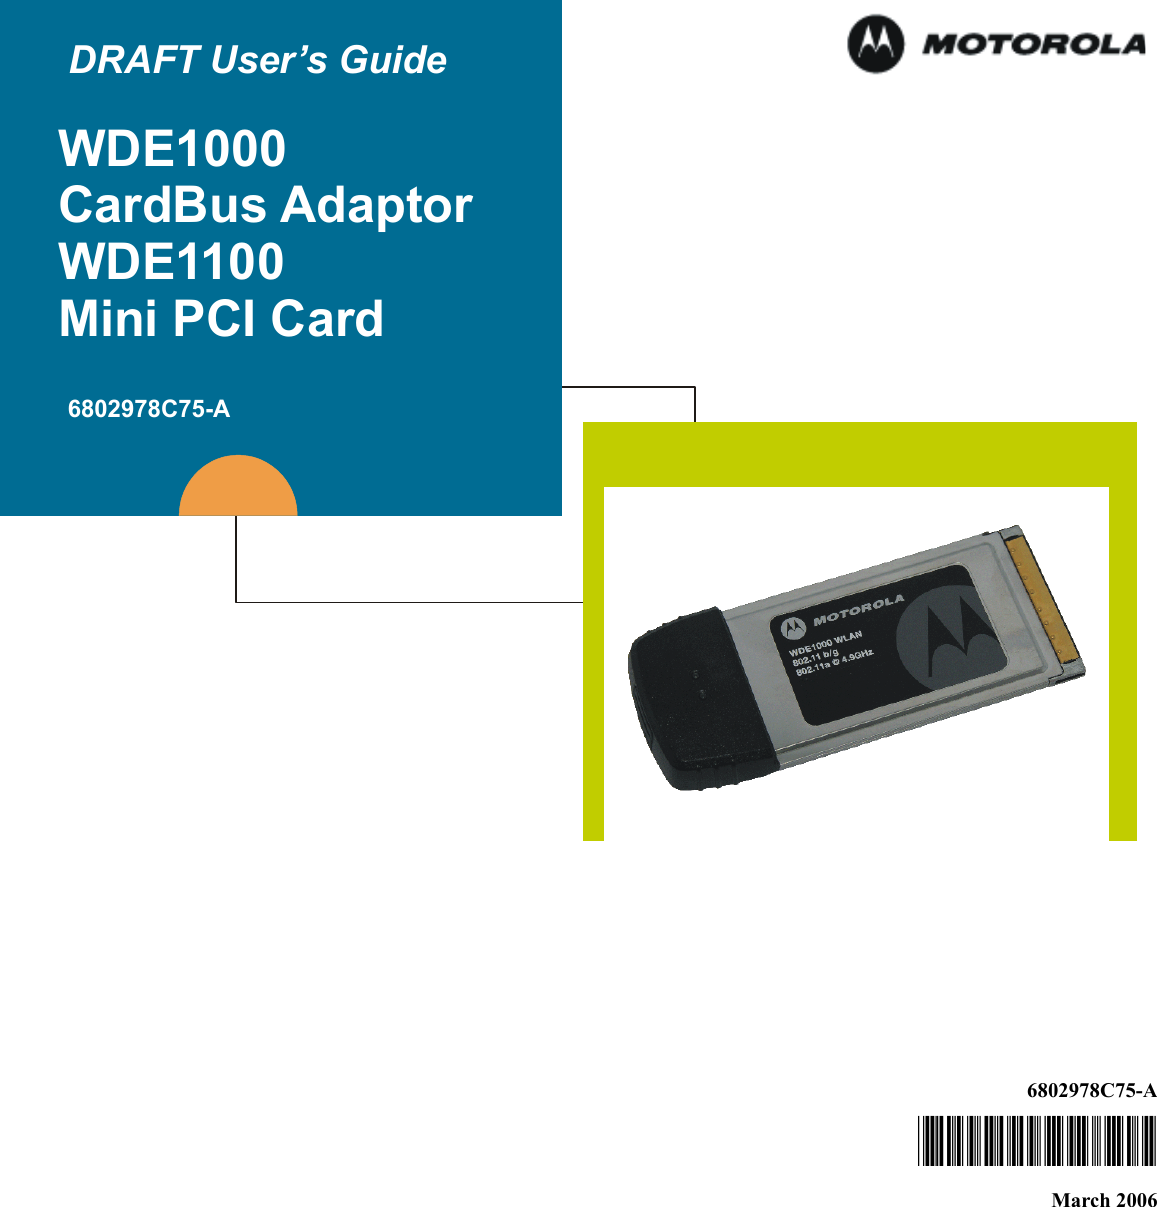 6802978C75-A@6802978C75@March 2006 DRAFT User’s GuideWDE1000CardBus AdaptorWDE1100Mini PCI Card6802978C75-A